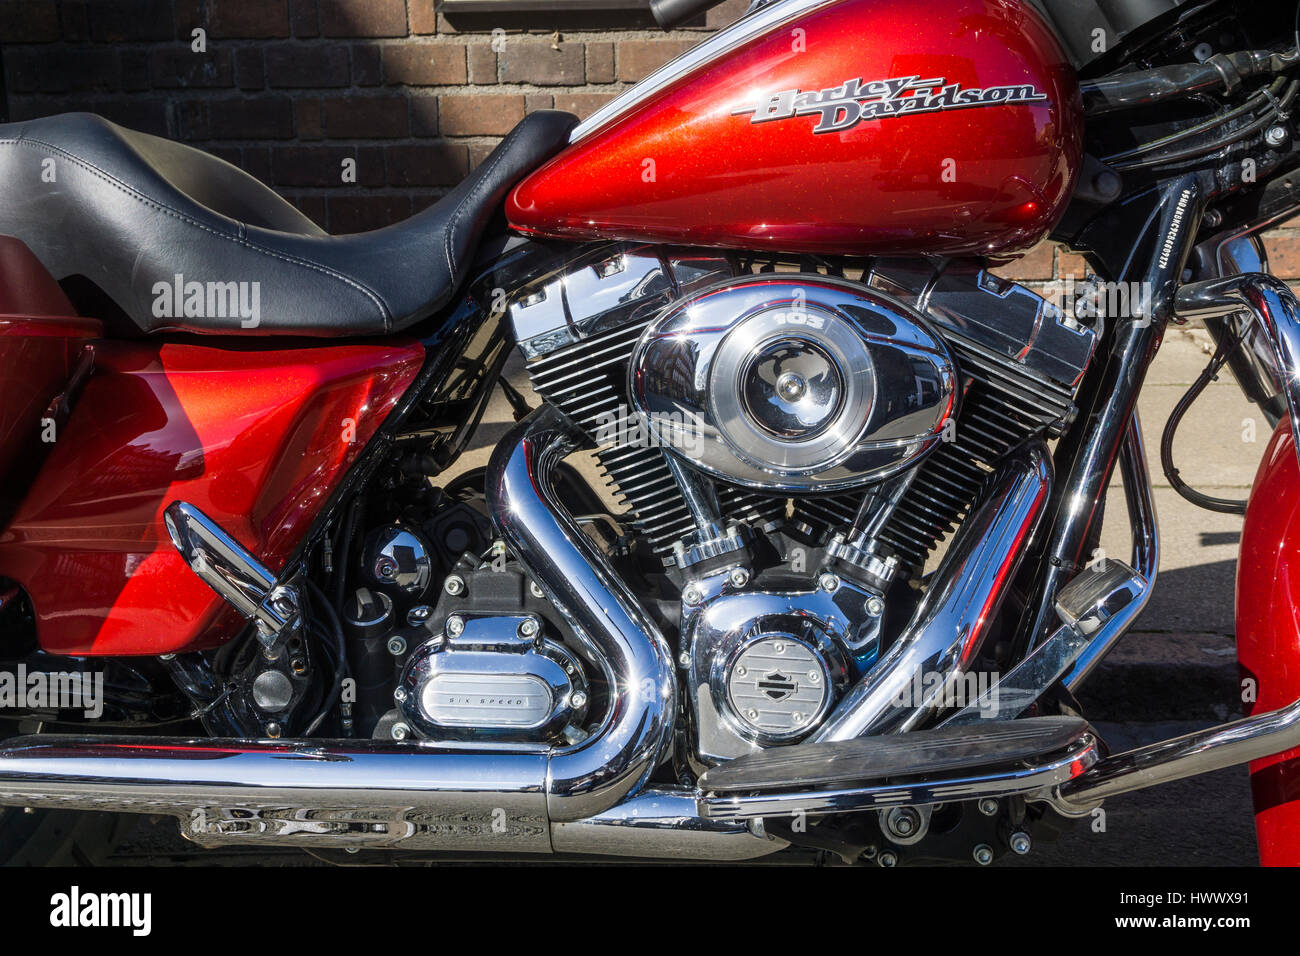 Harley Davidson Moto dettaglio del motore Foto Stock